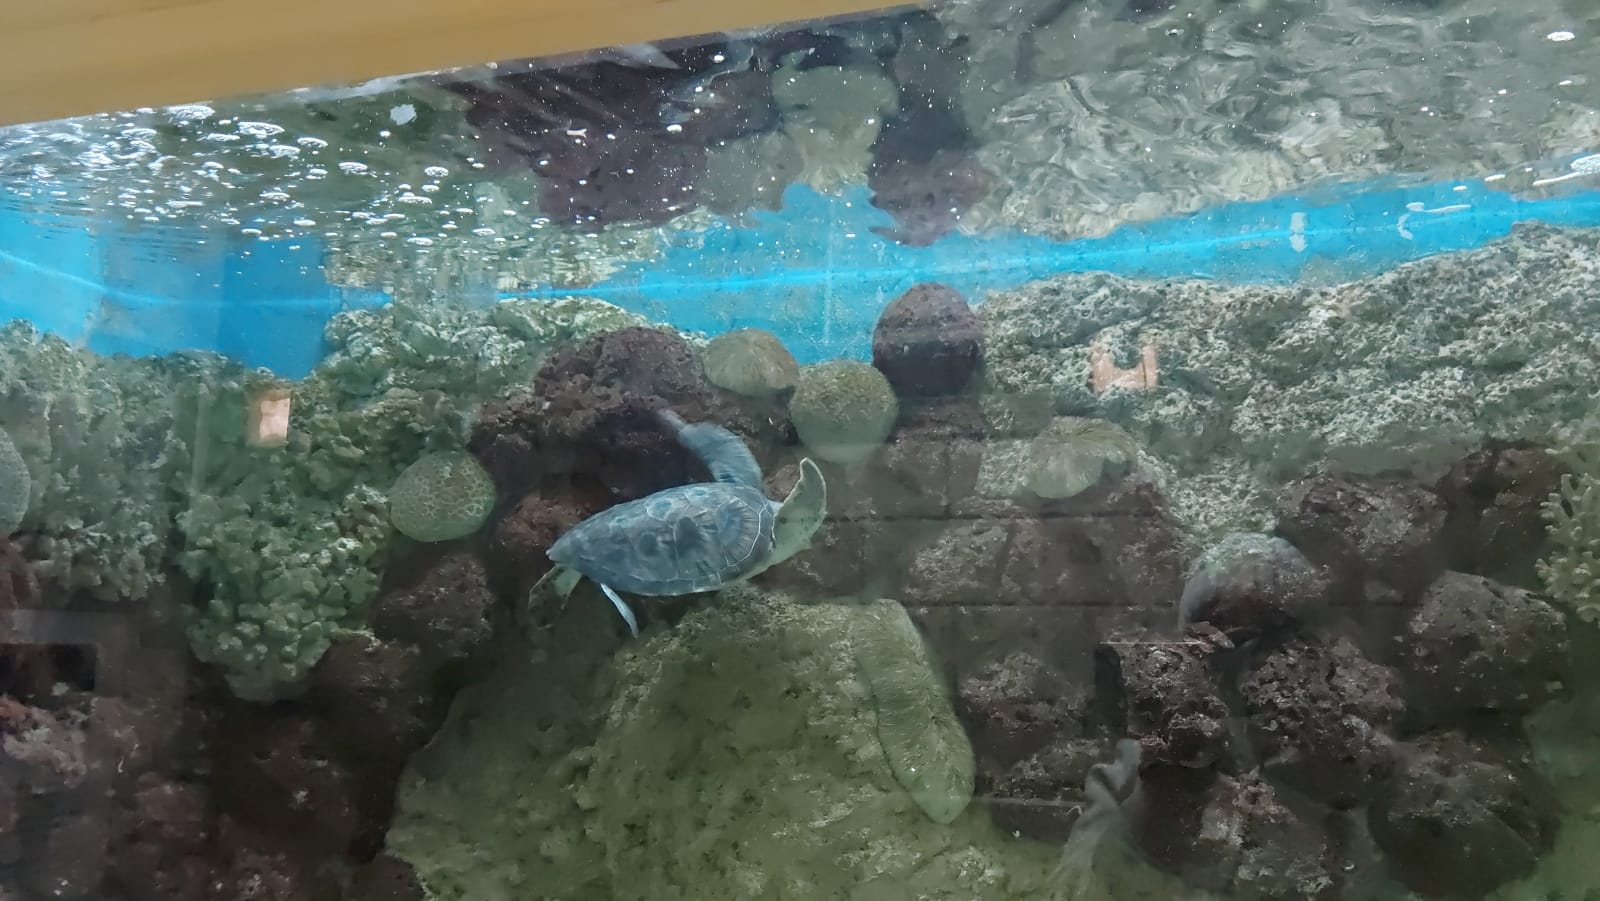 السلحفاة البحرية داخل متحف الأحياء المائية بالإسكندرية (6)